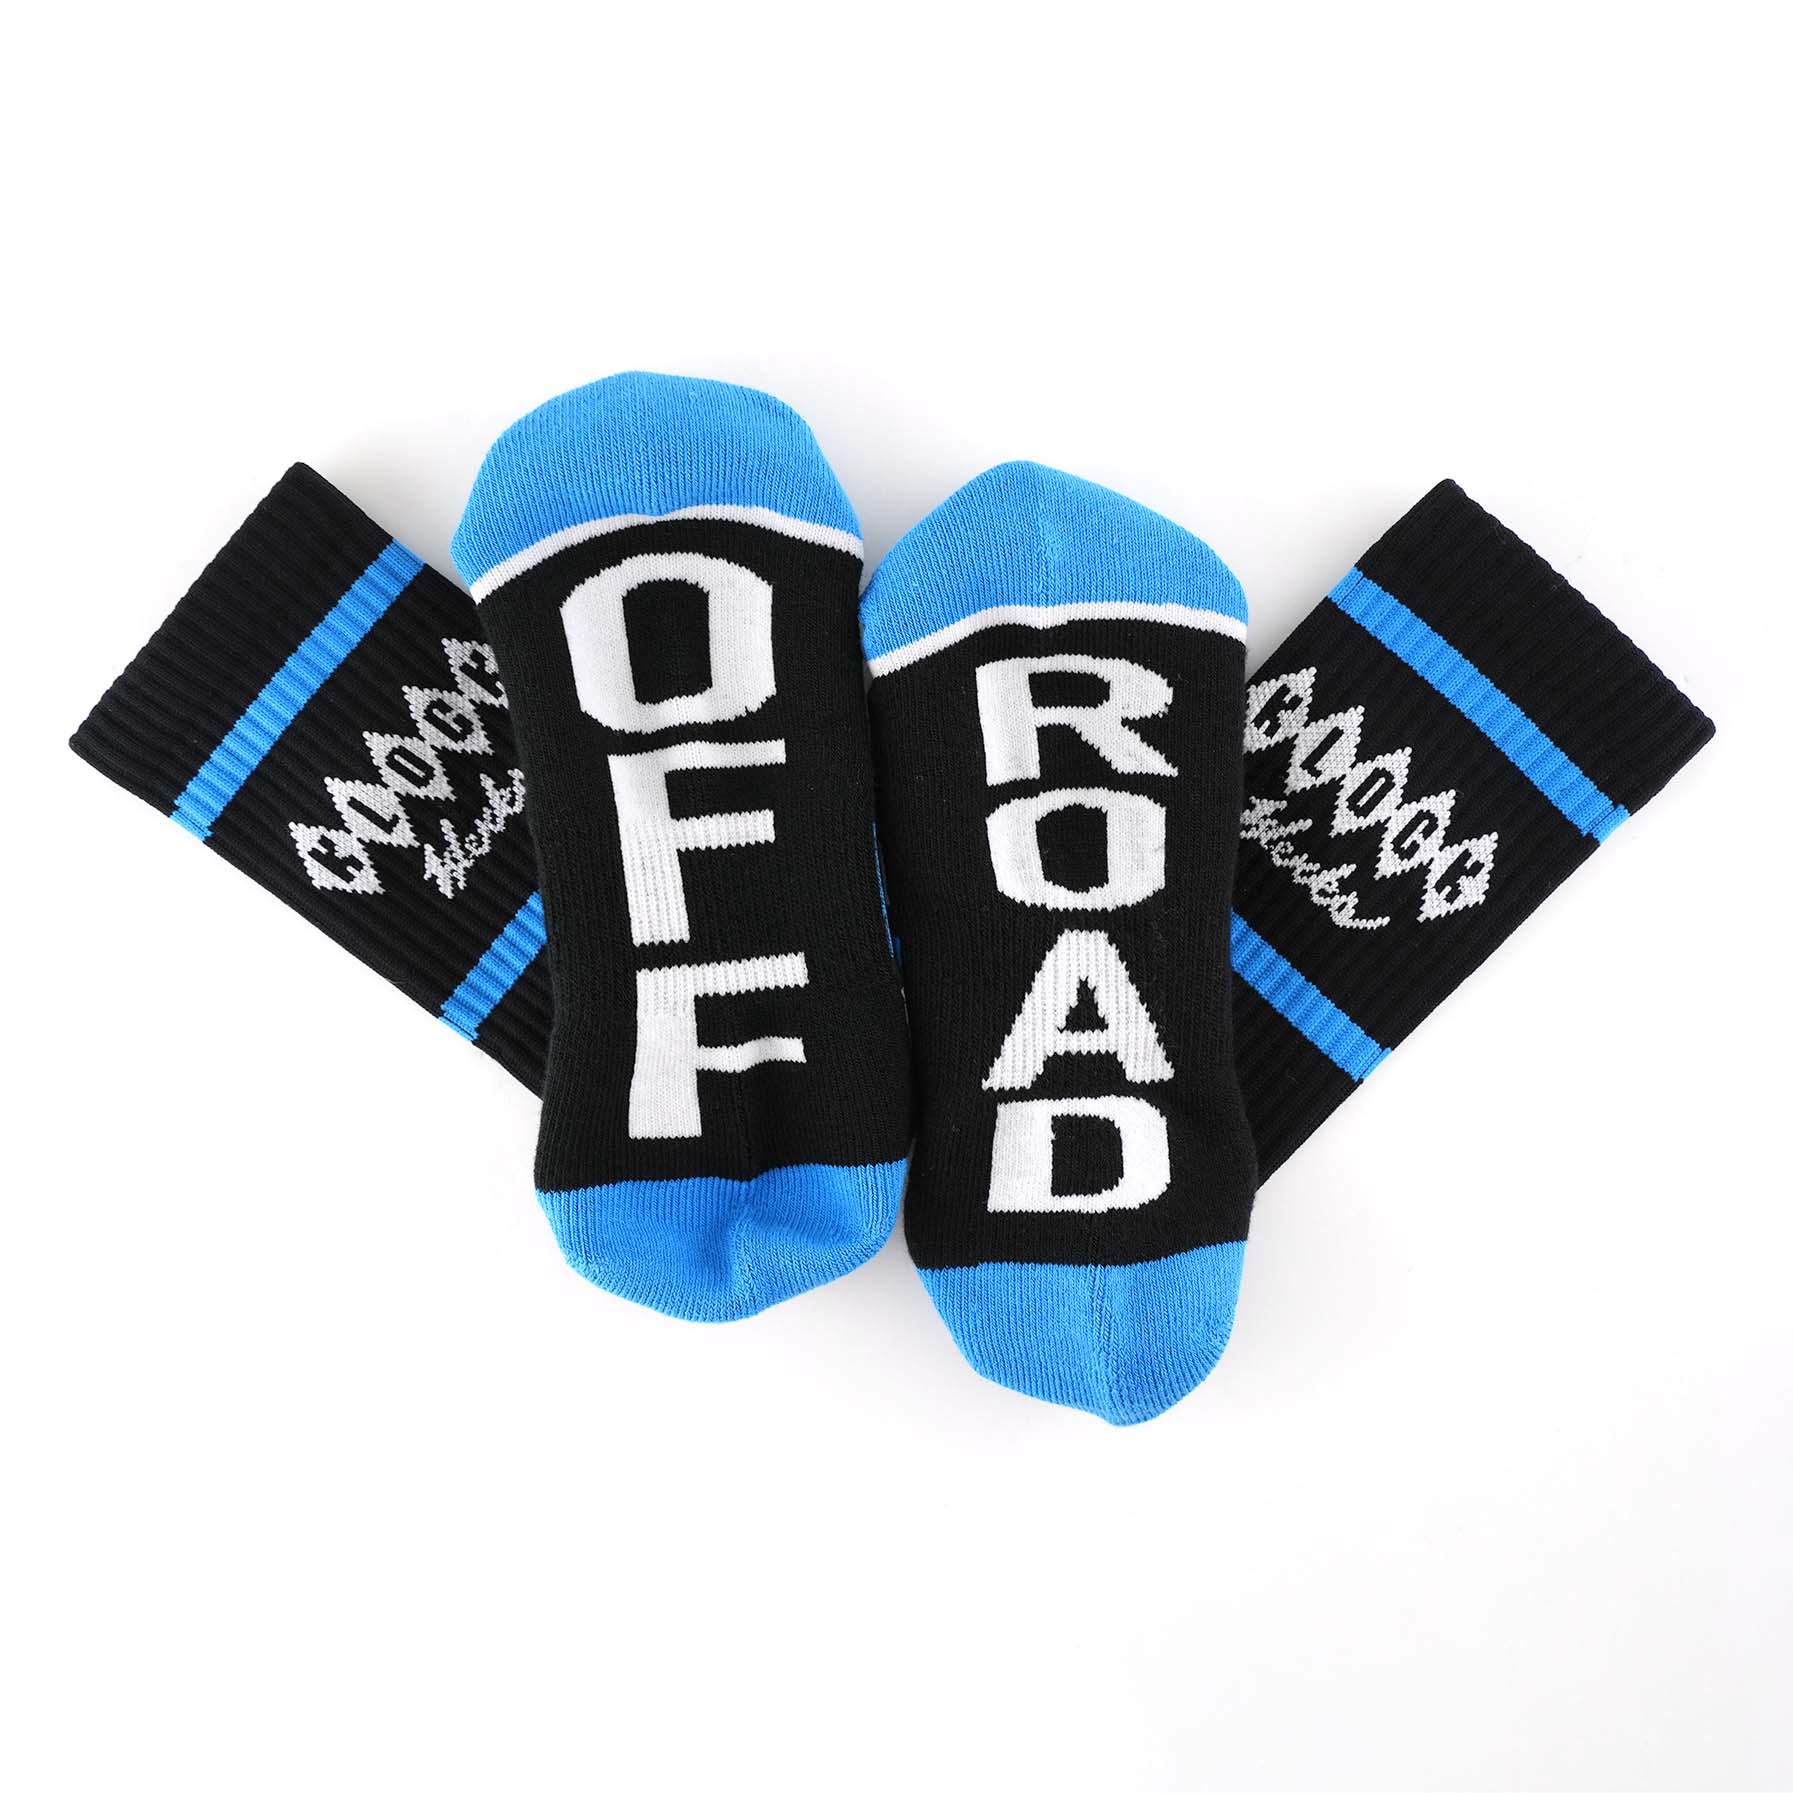 Klock Werks x Fuel Klock Crew Socks in Blue with Off Road on the feet(Blue with Off Road on the feet)